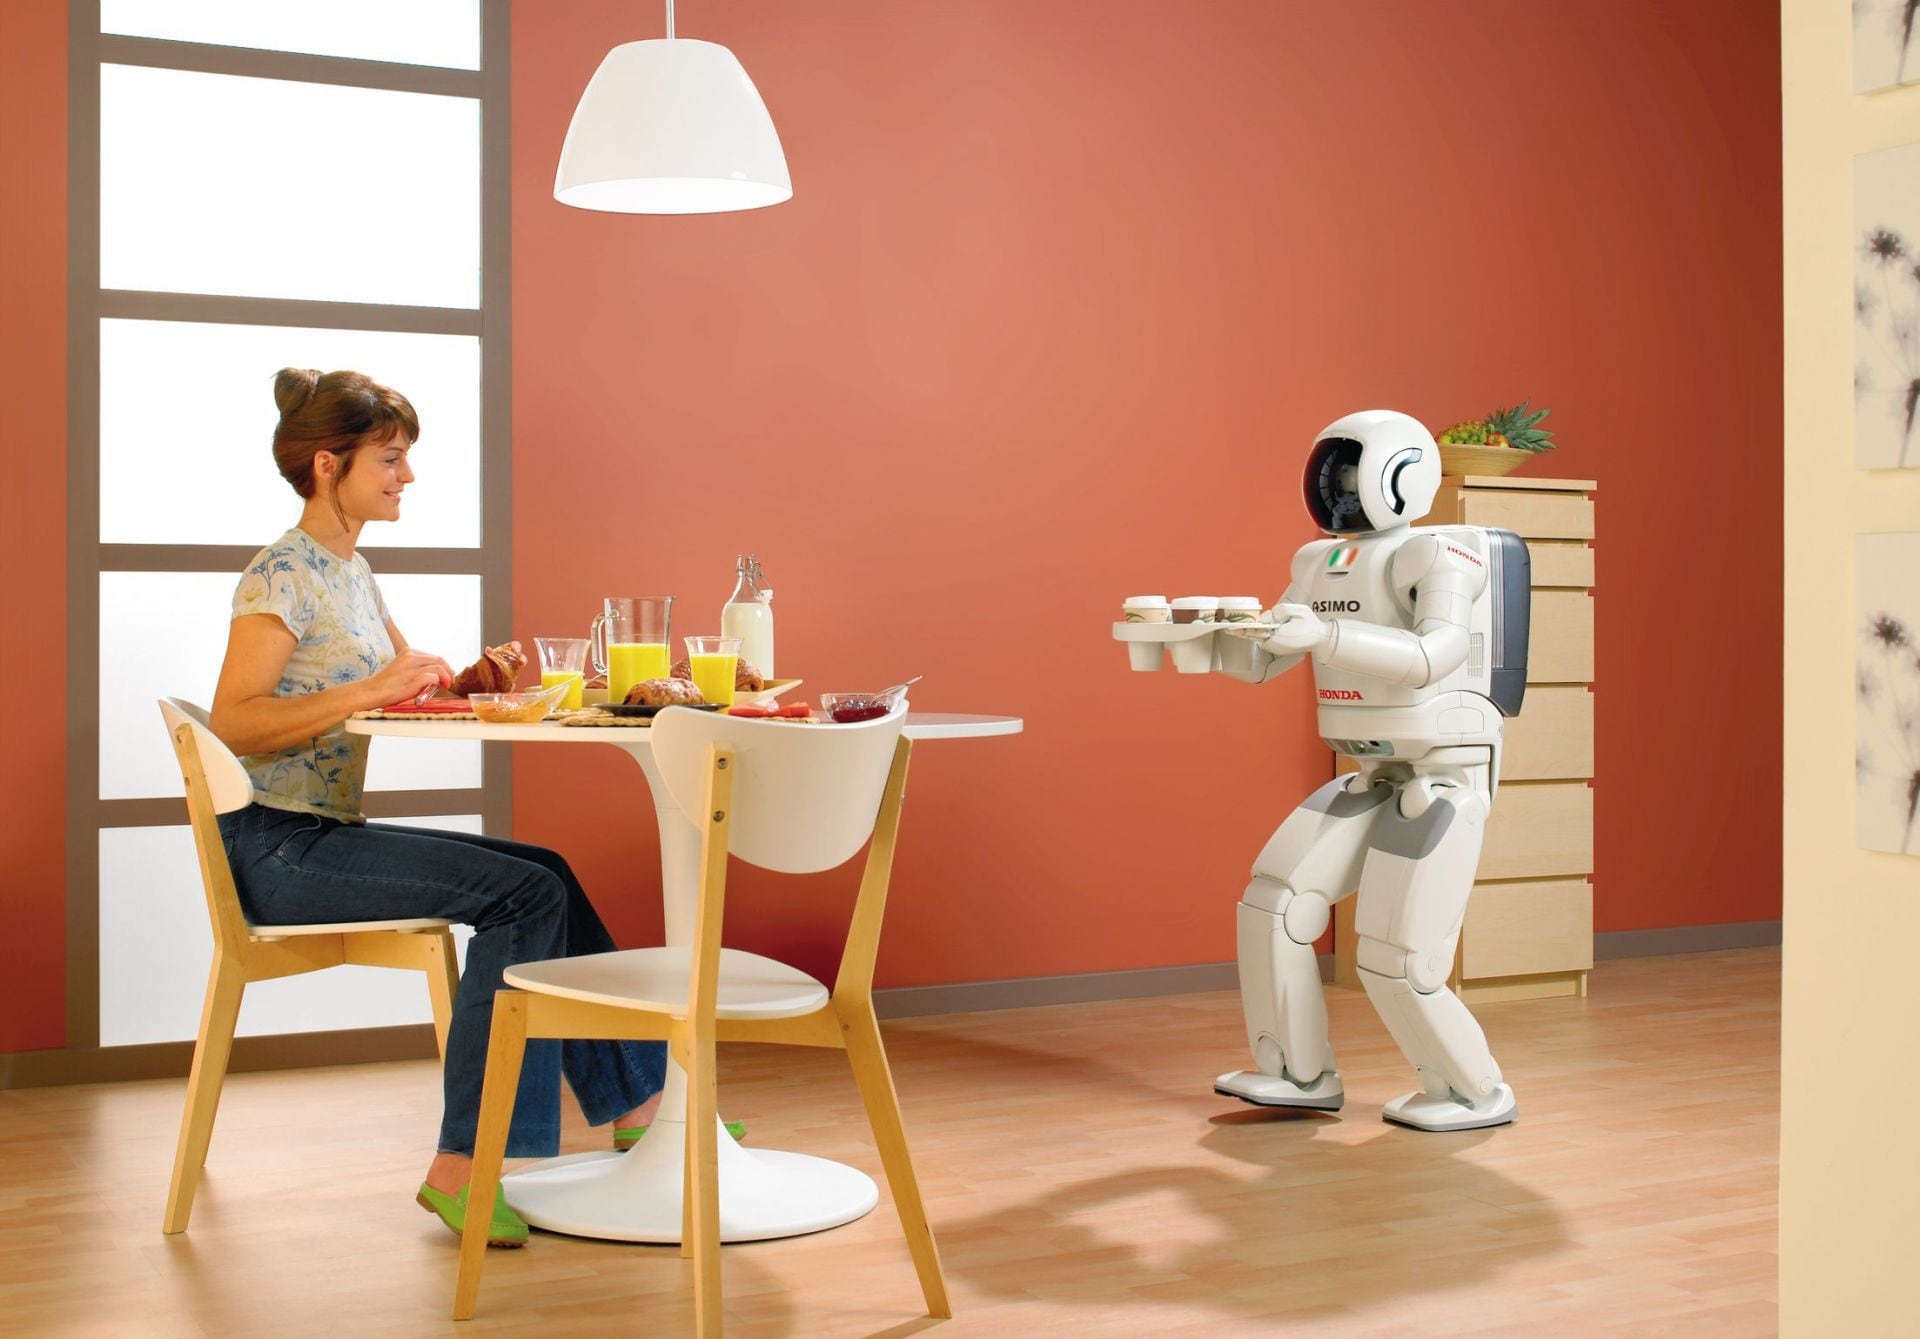 Robots en un futuro conviviendo con los humanos en sus hogares. (foto: Autodesk Journal)